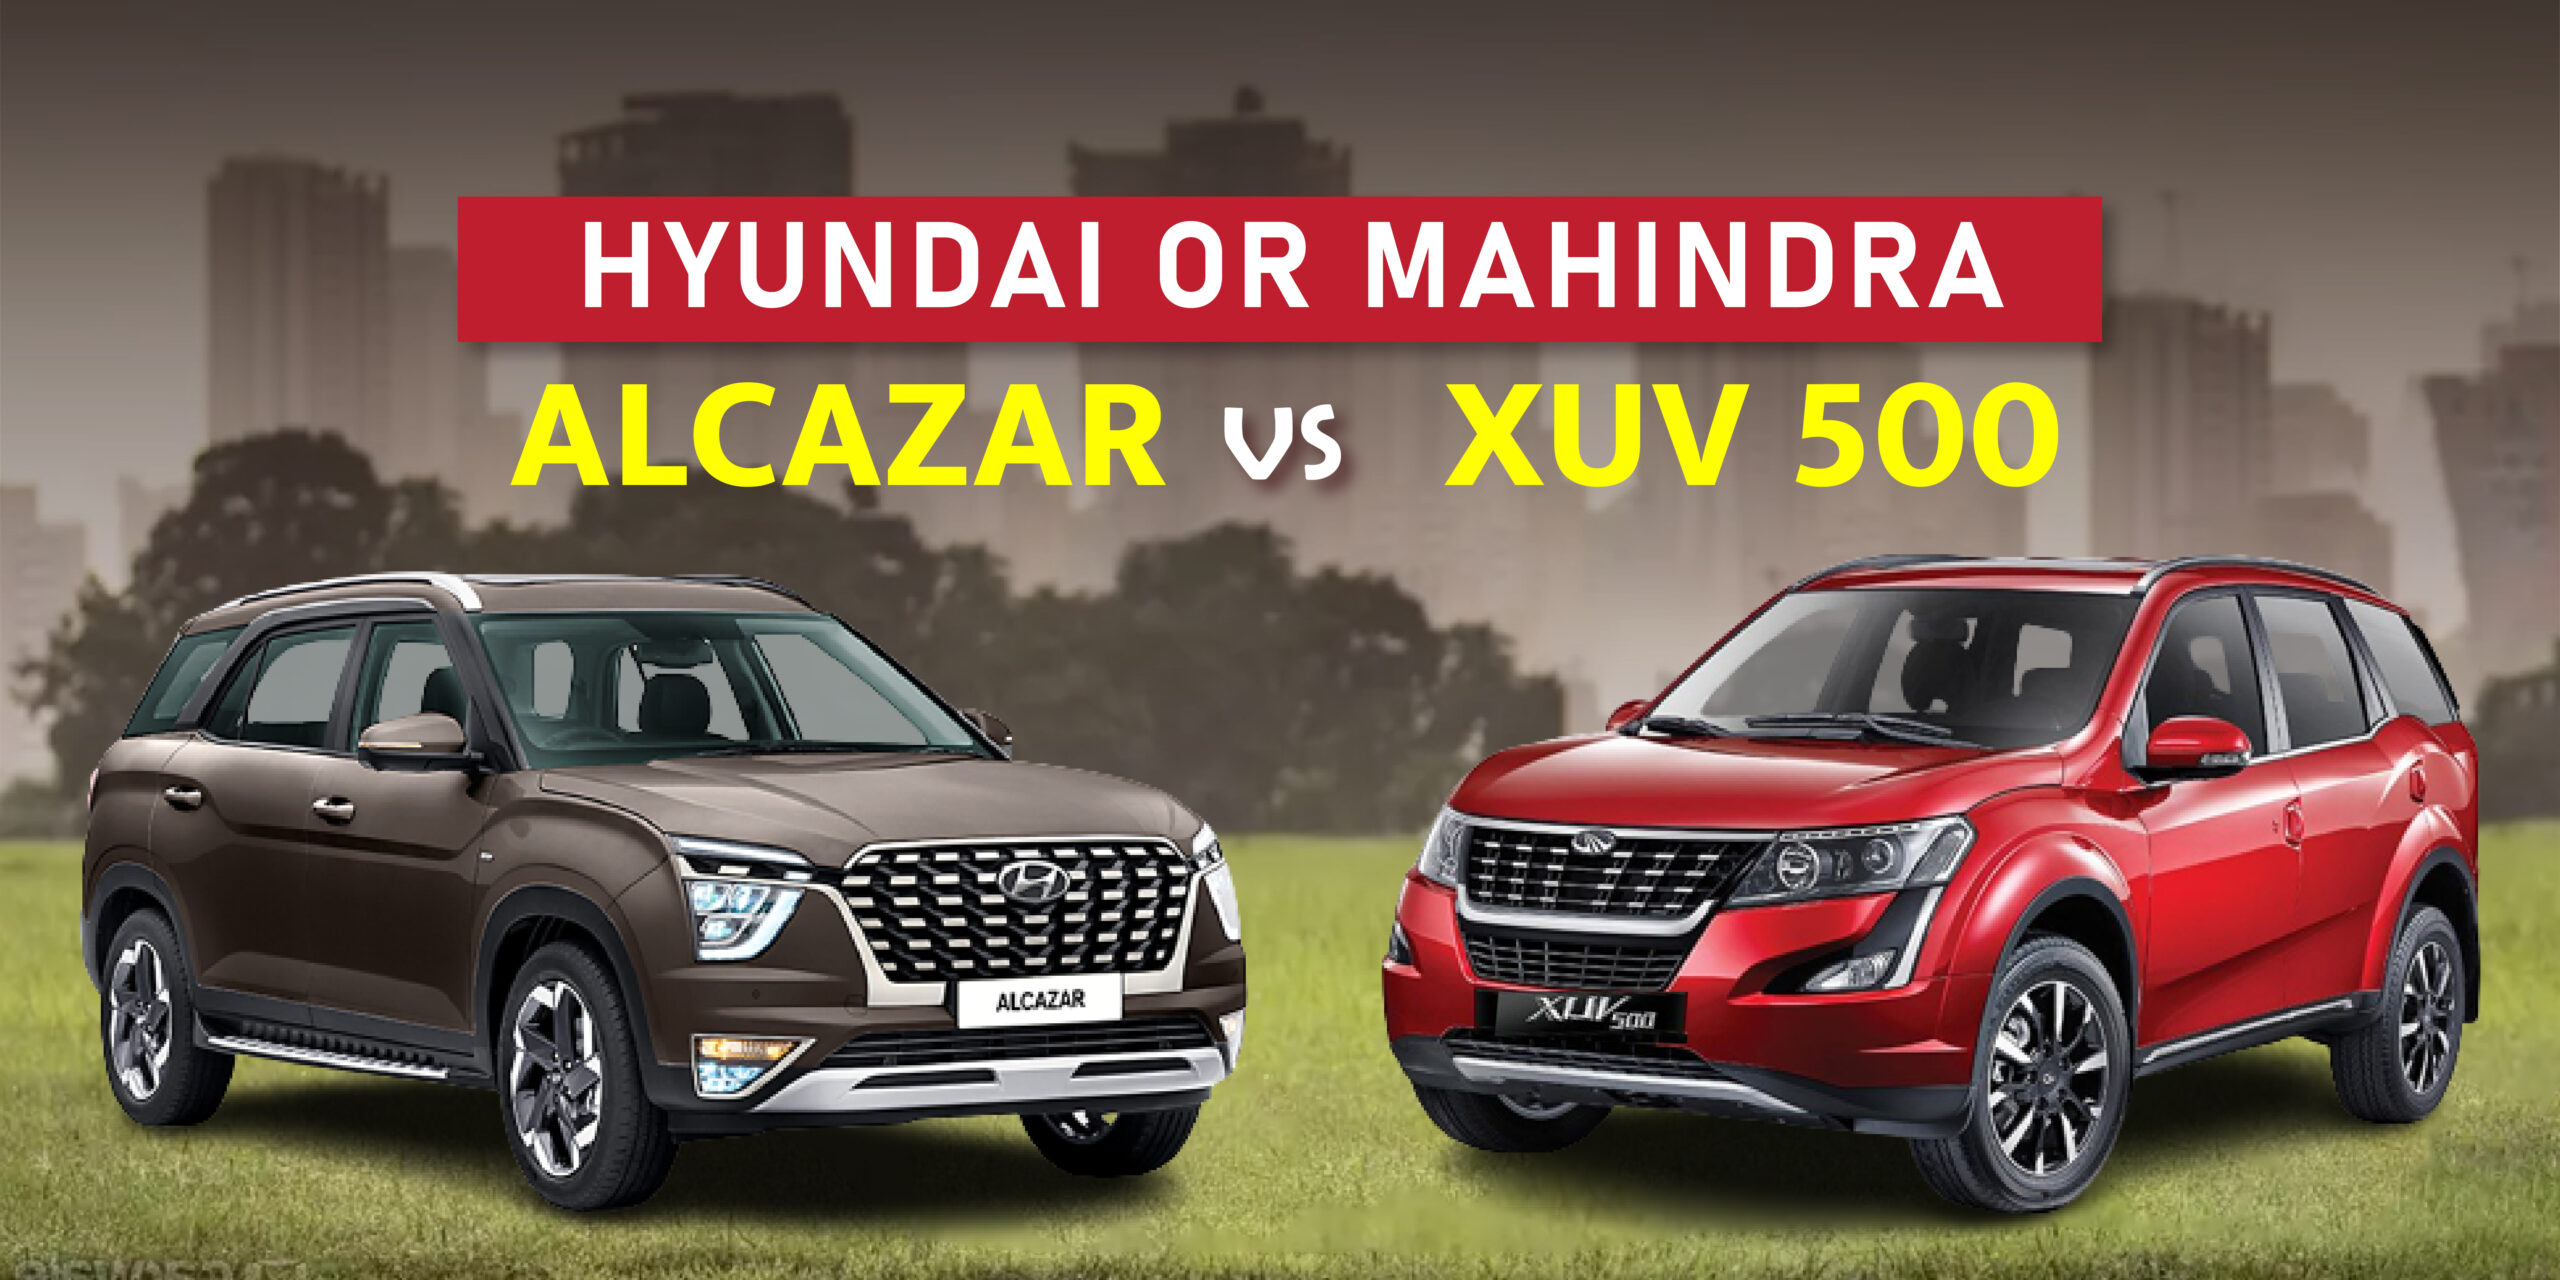 Hyundai alcazar vs. XUV 500|Hyundai Alcazar|Mahindra XUV 500|Hyundai Alcazar|Mahindra XUV 500|Mahindra XUV 500 interior